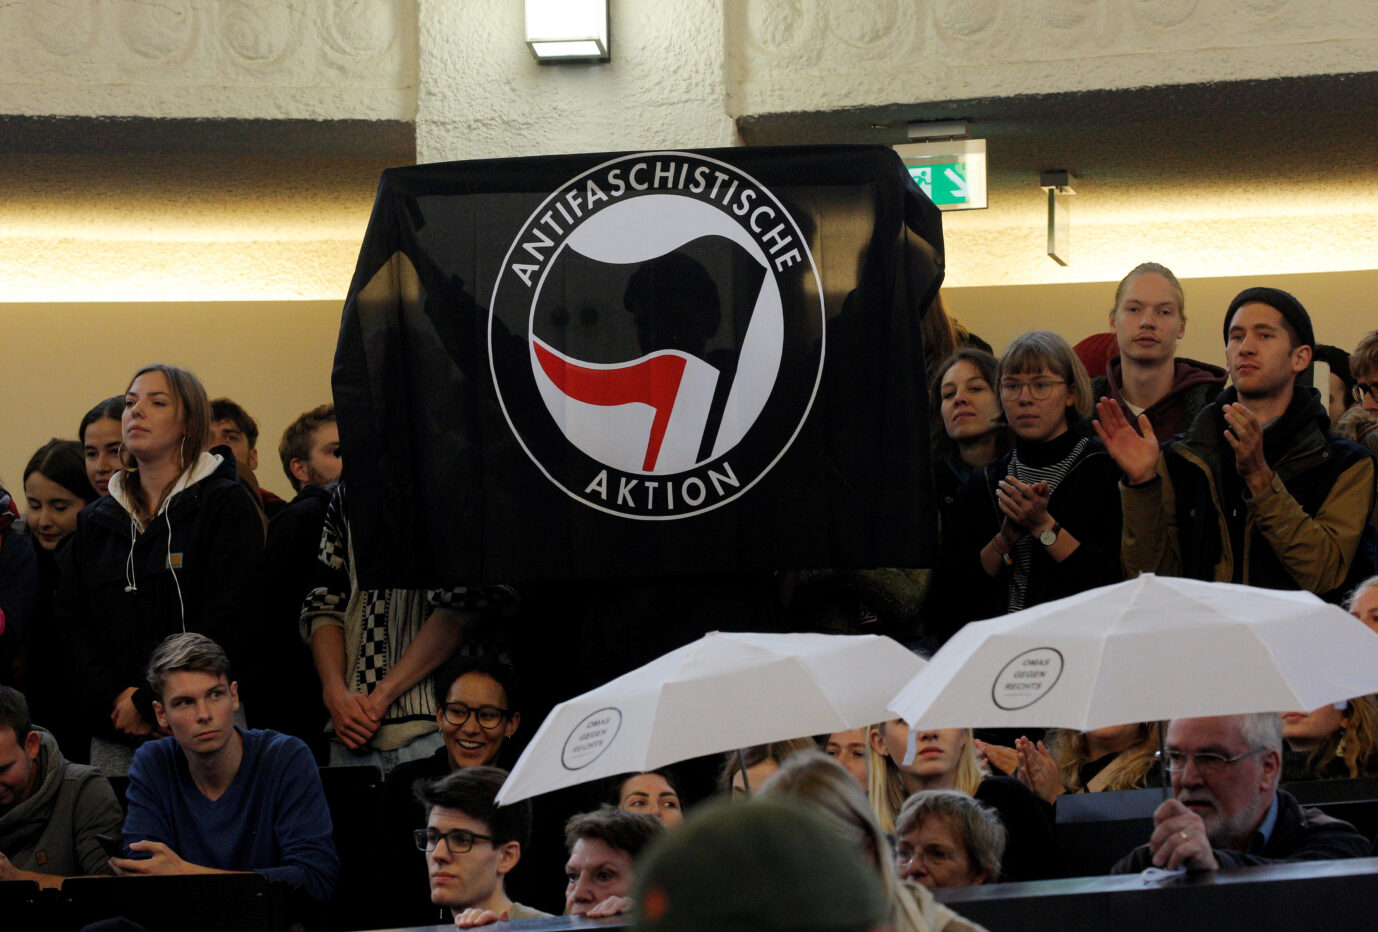 Linksradikale demonstrieren 2019 in Hamburger Universität gegen Professor Bernd Lucke